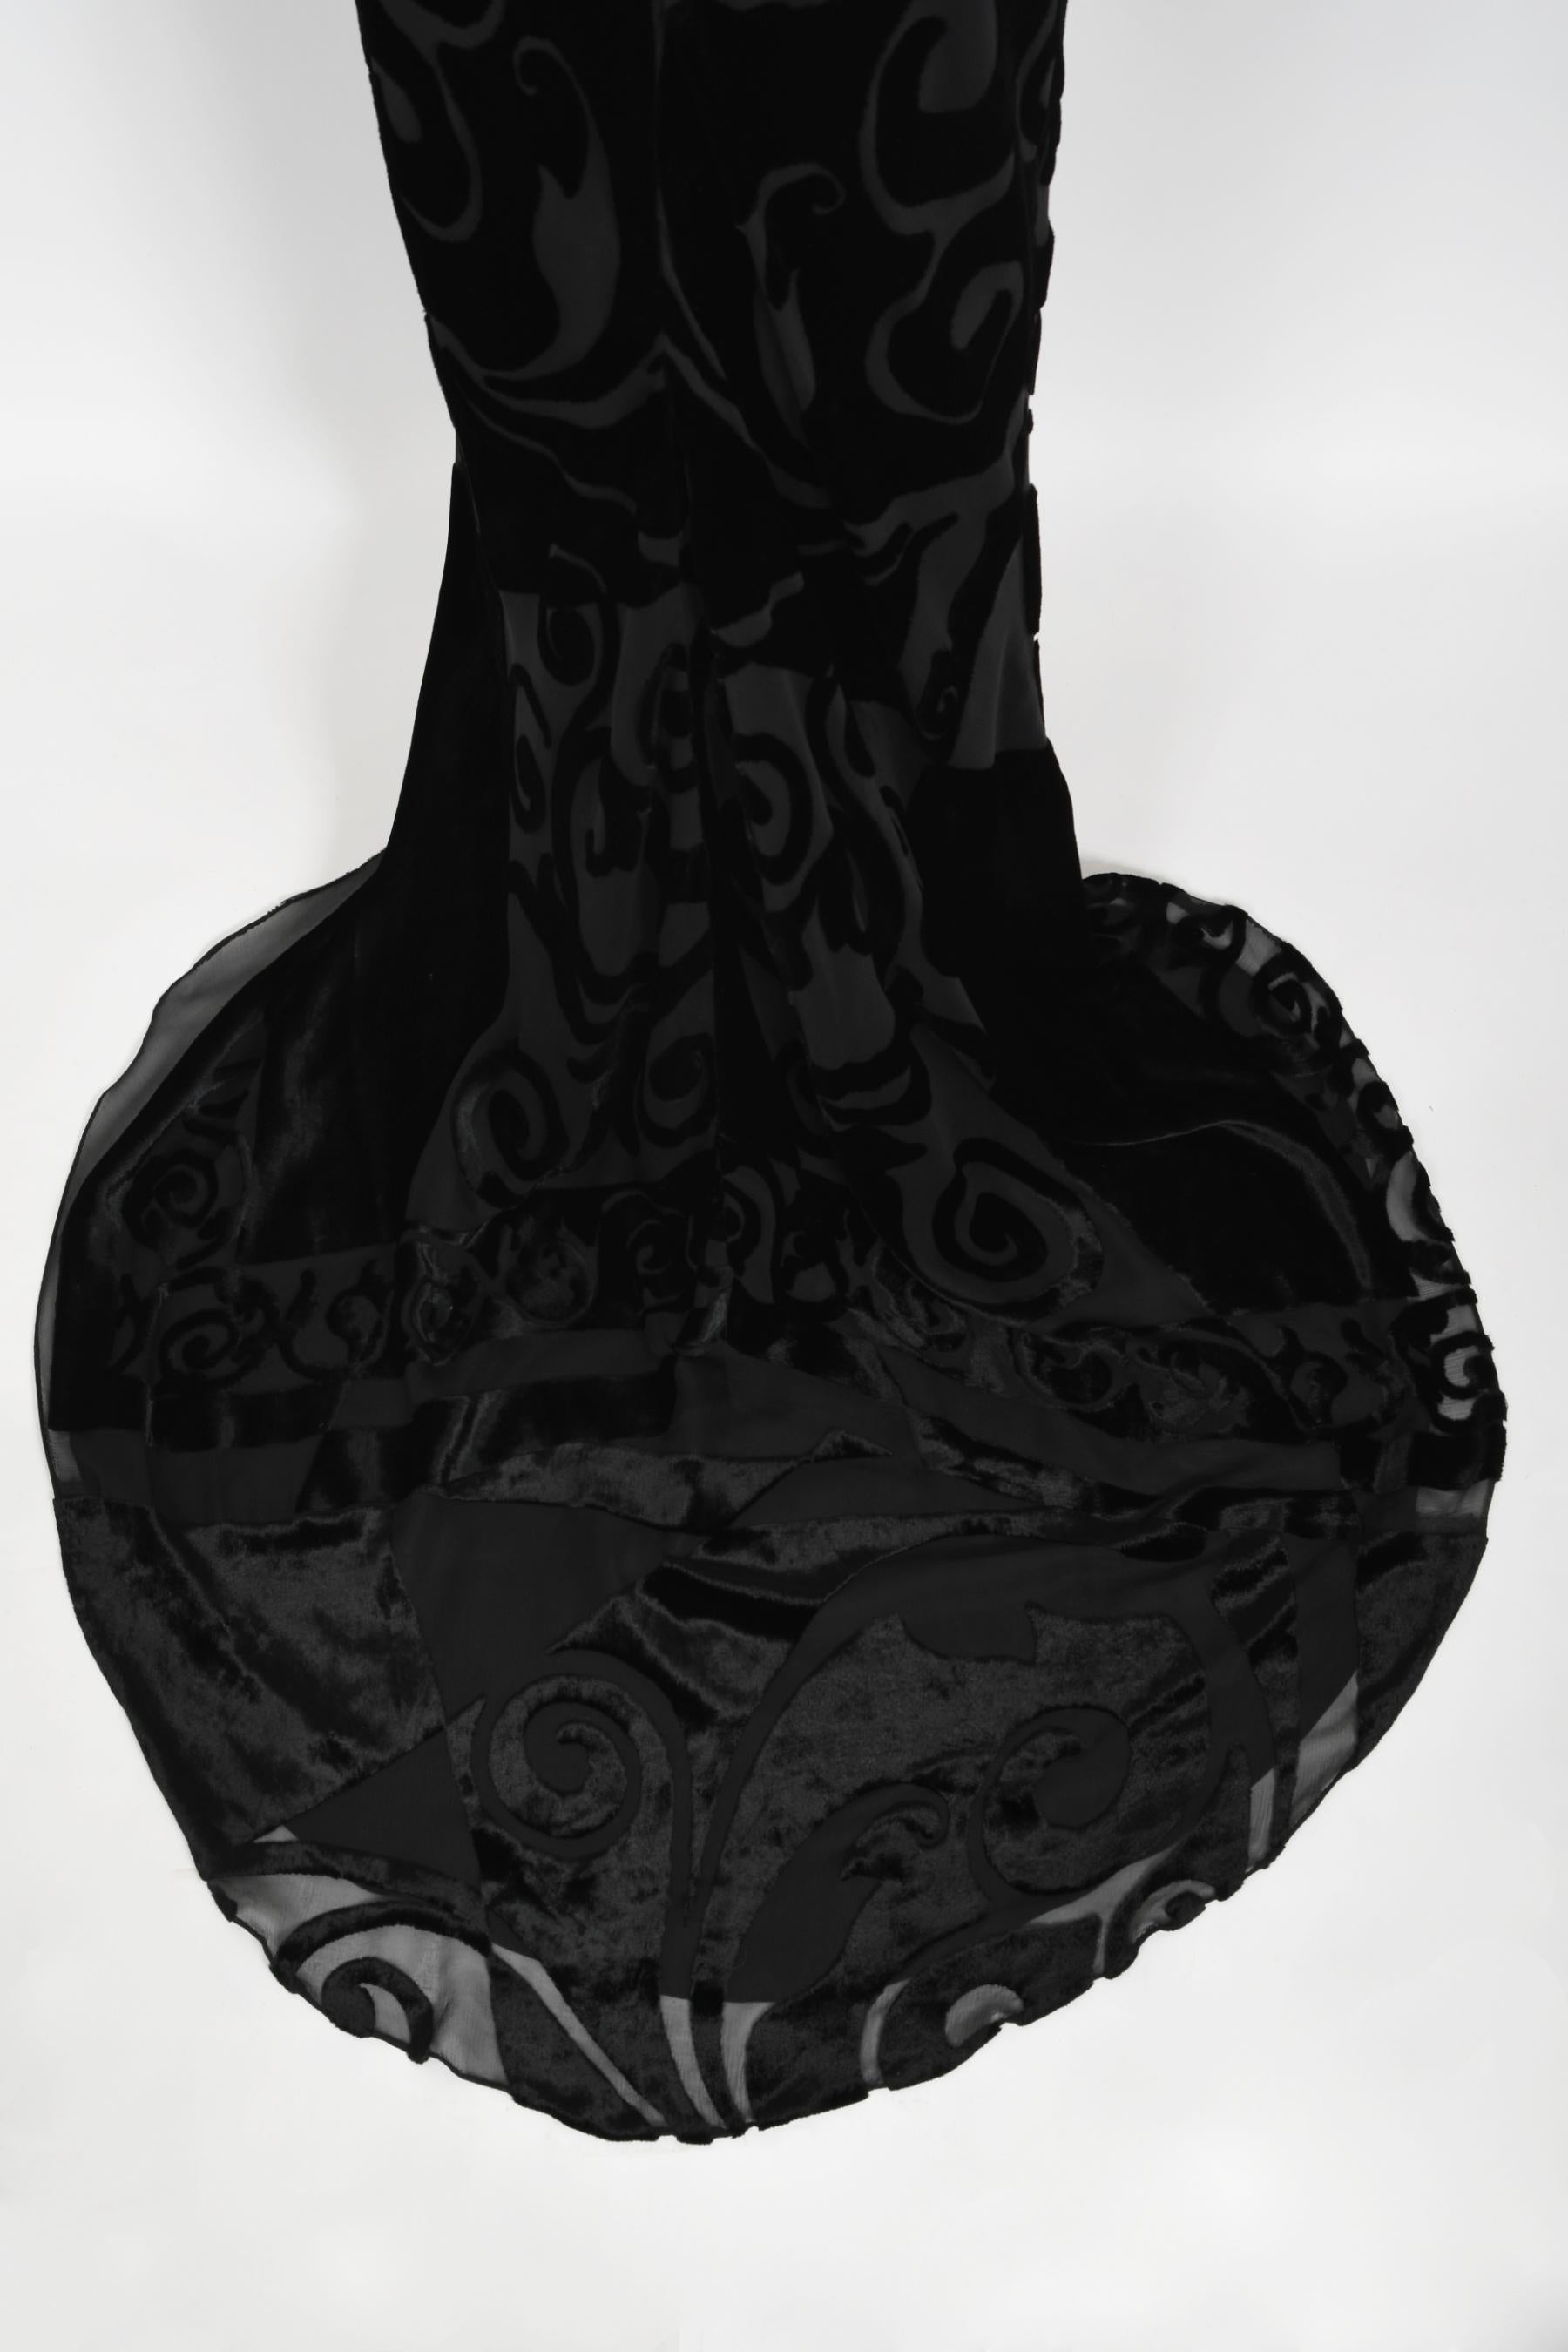 Vintage 1997 Galindo Couture Black Devoré Velvet Bias-Cut Halter Trained Gown  For Sale 9